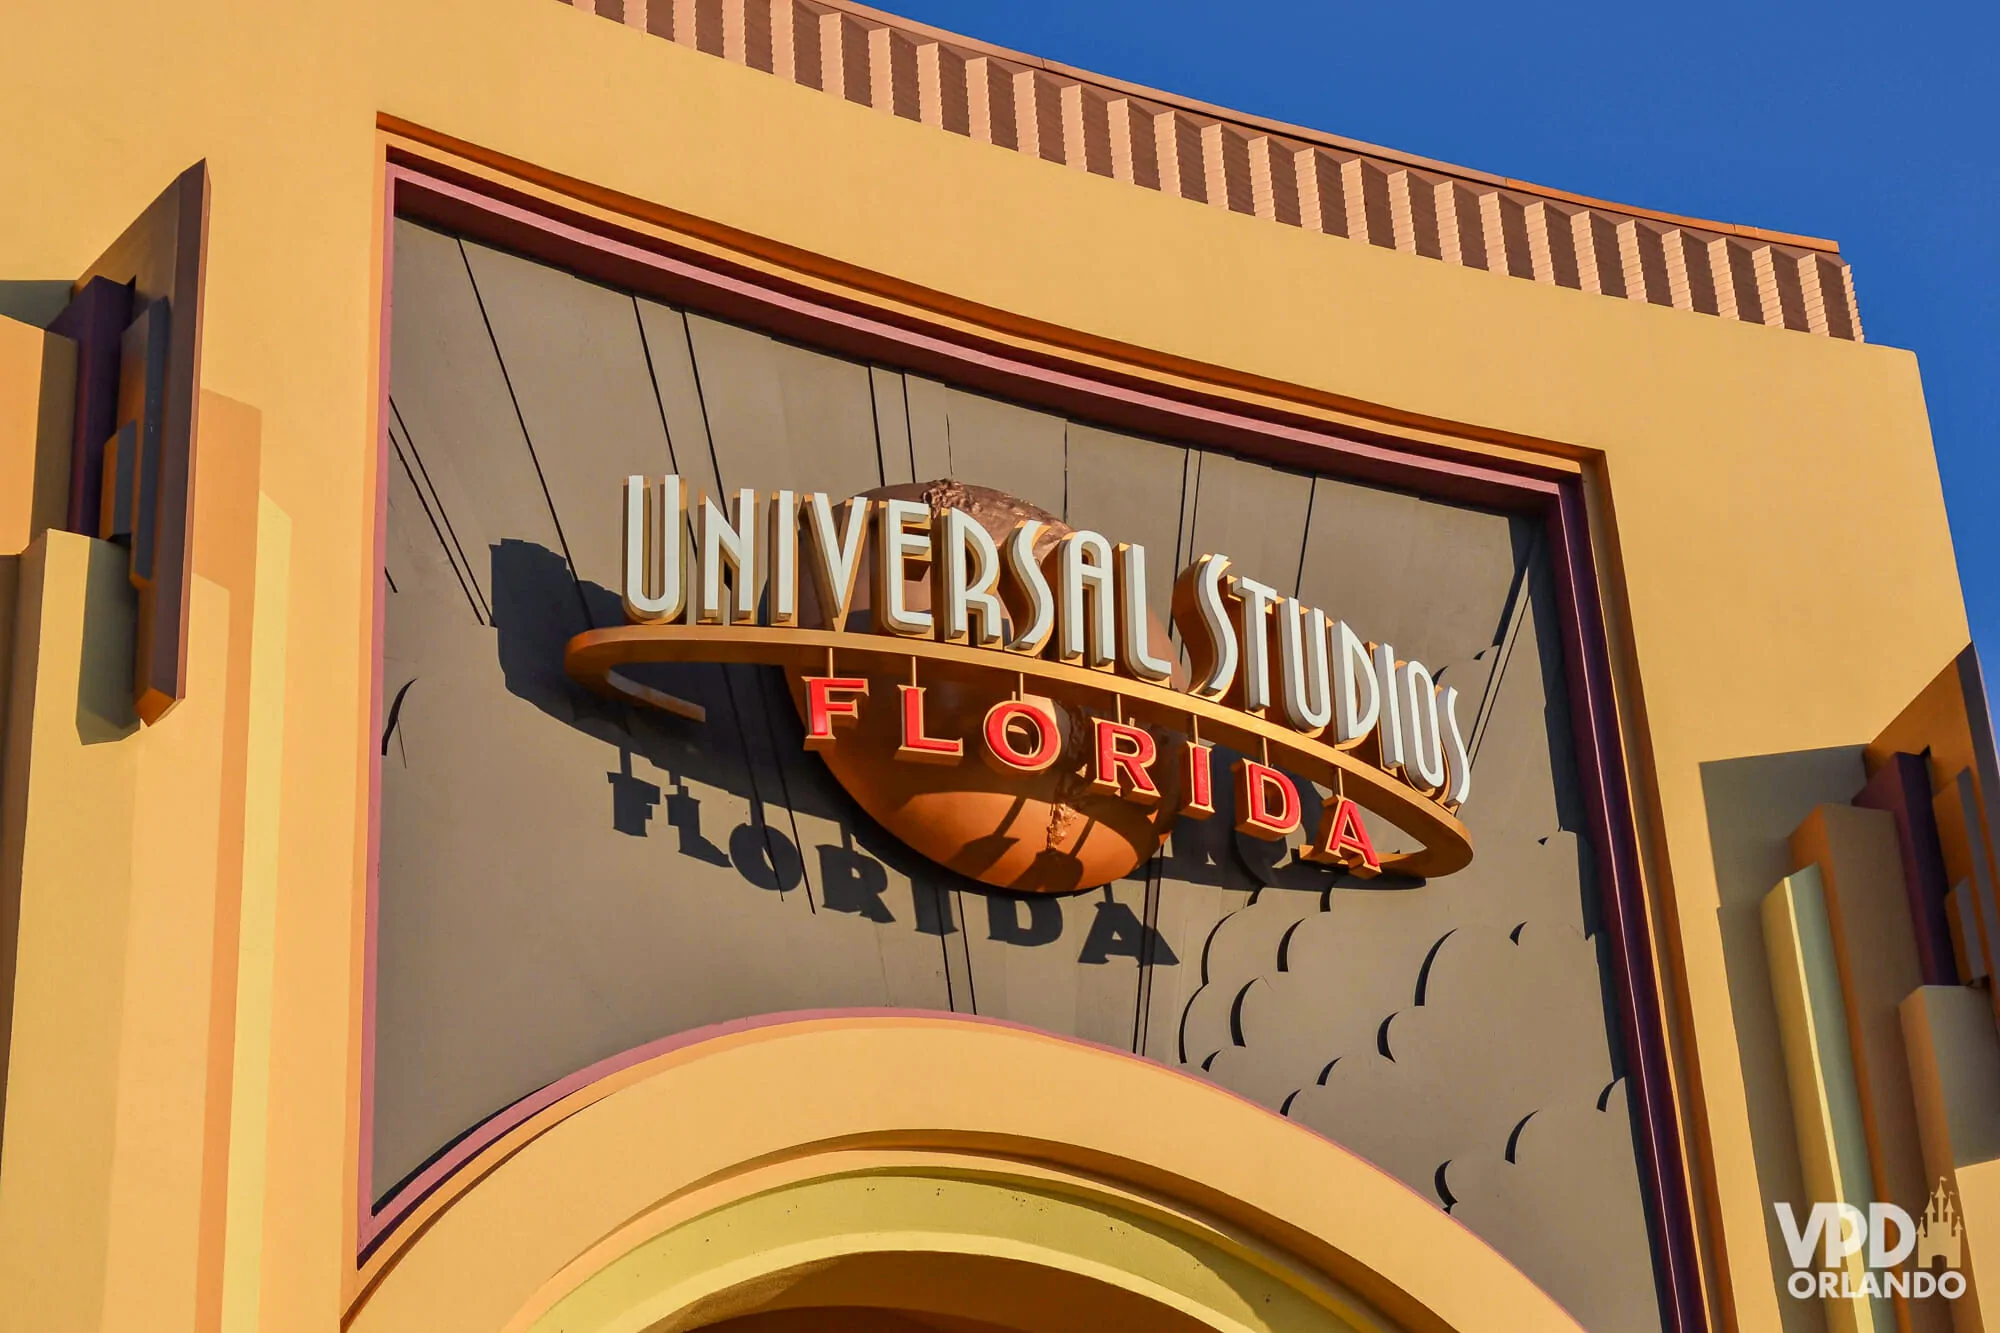 Melhor dia da semana para ir ao universal studios Universal Studios Roteiro Completo E Gratuito Para Aproveitar O Parque